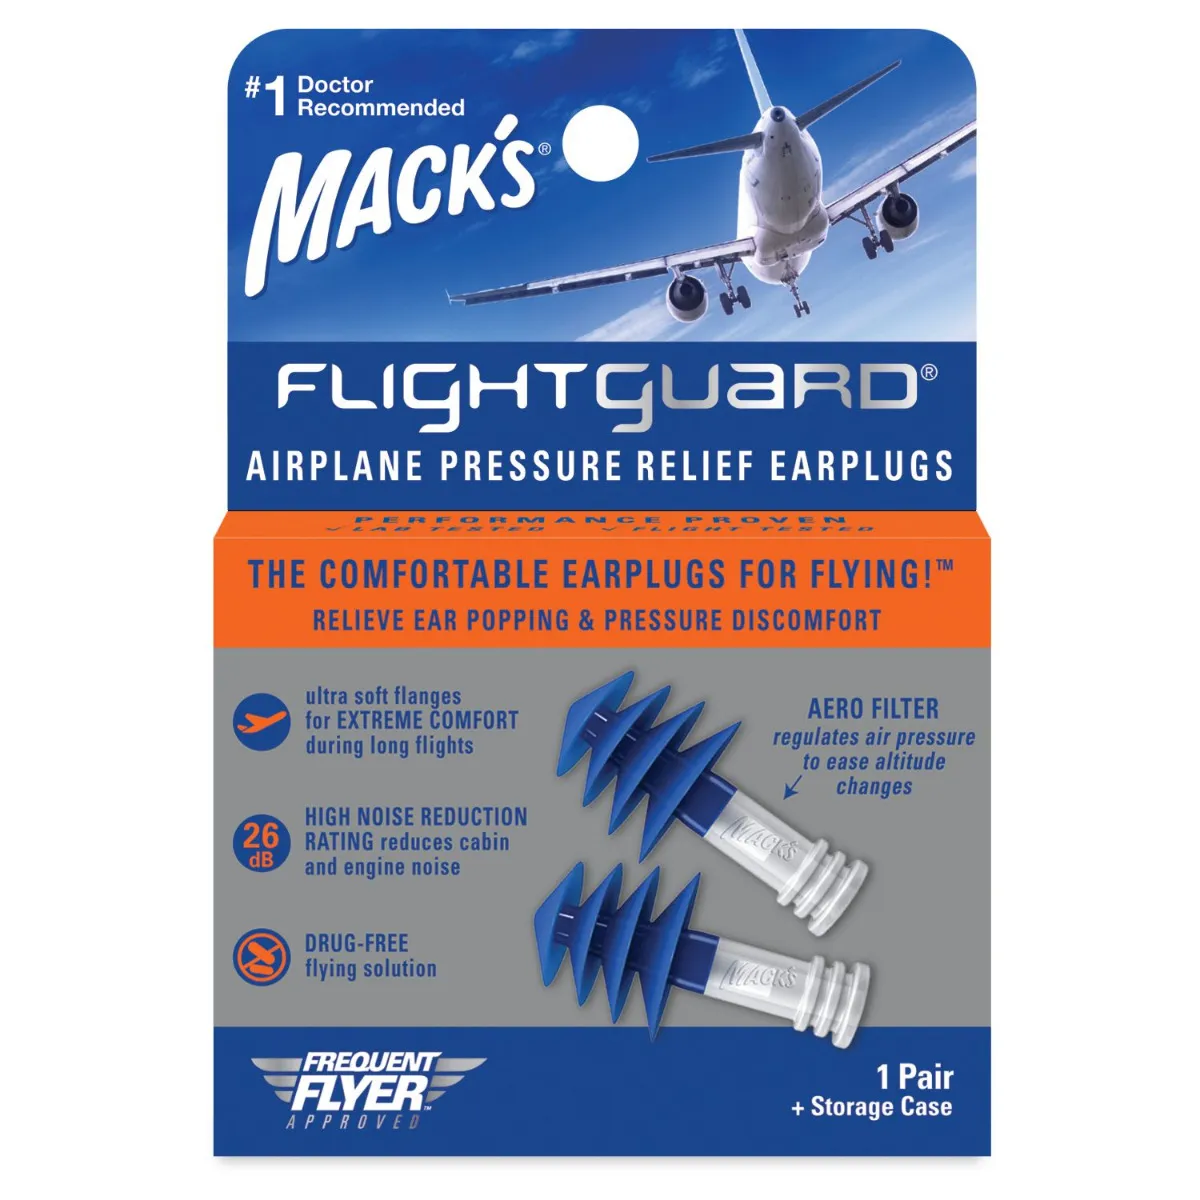 MACKS Flightguard